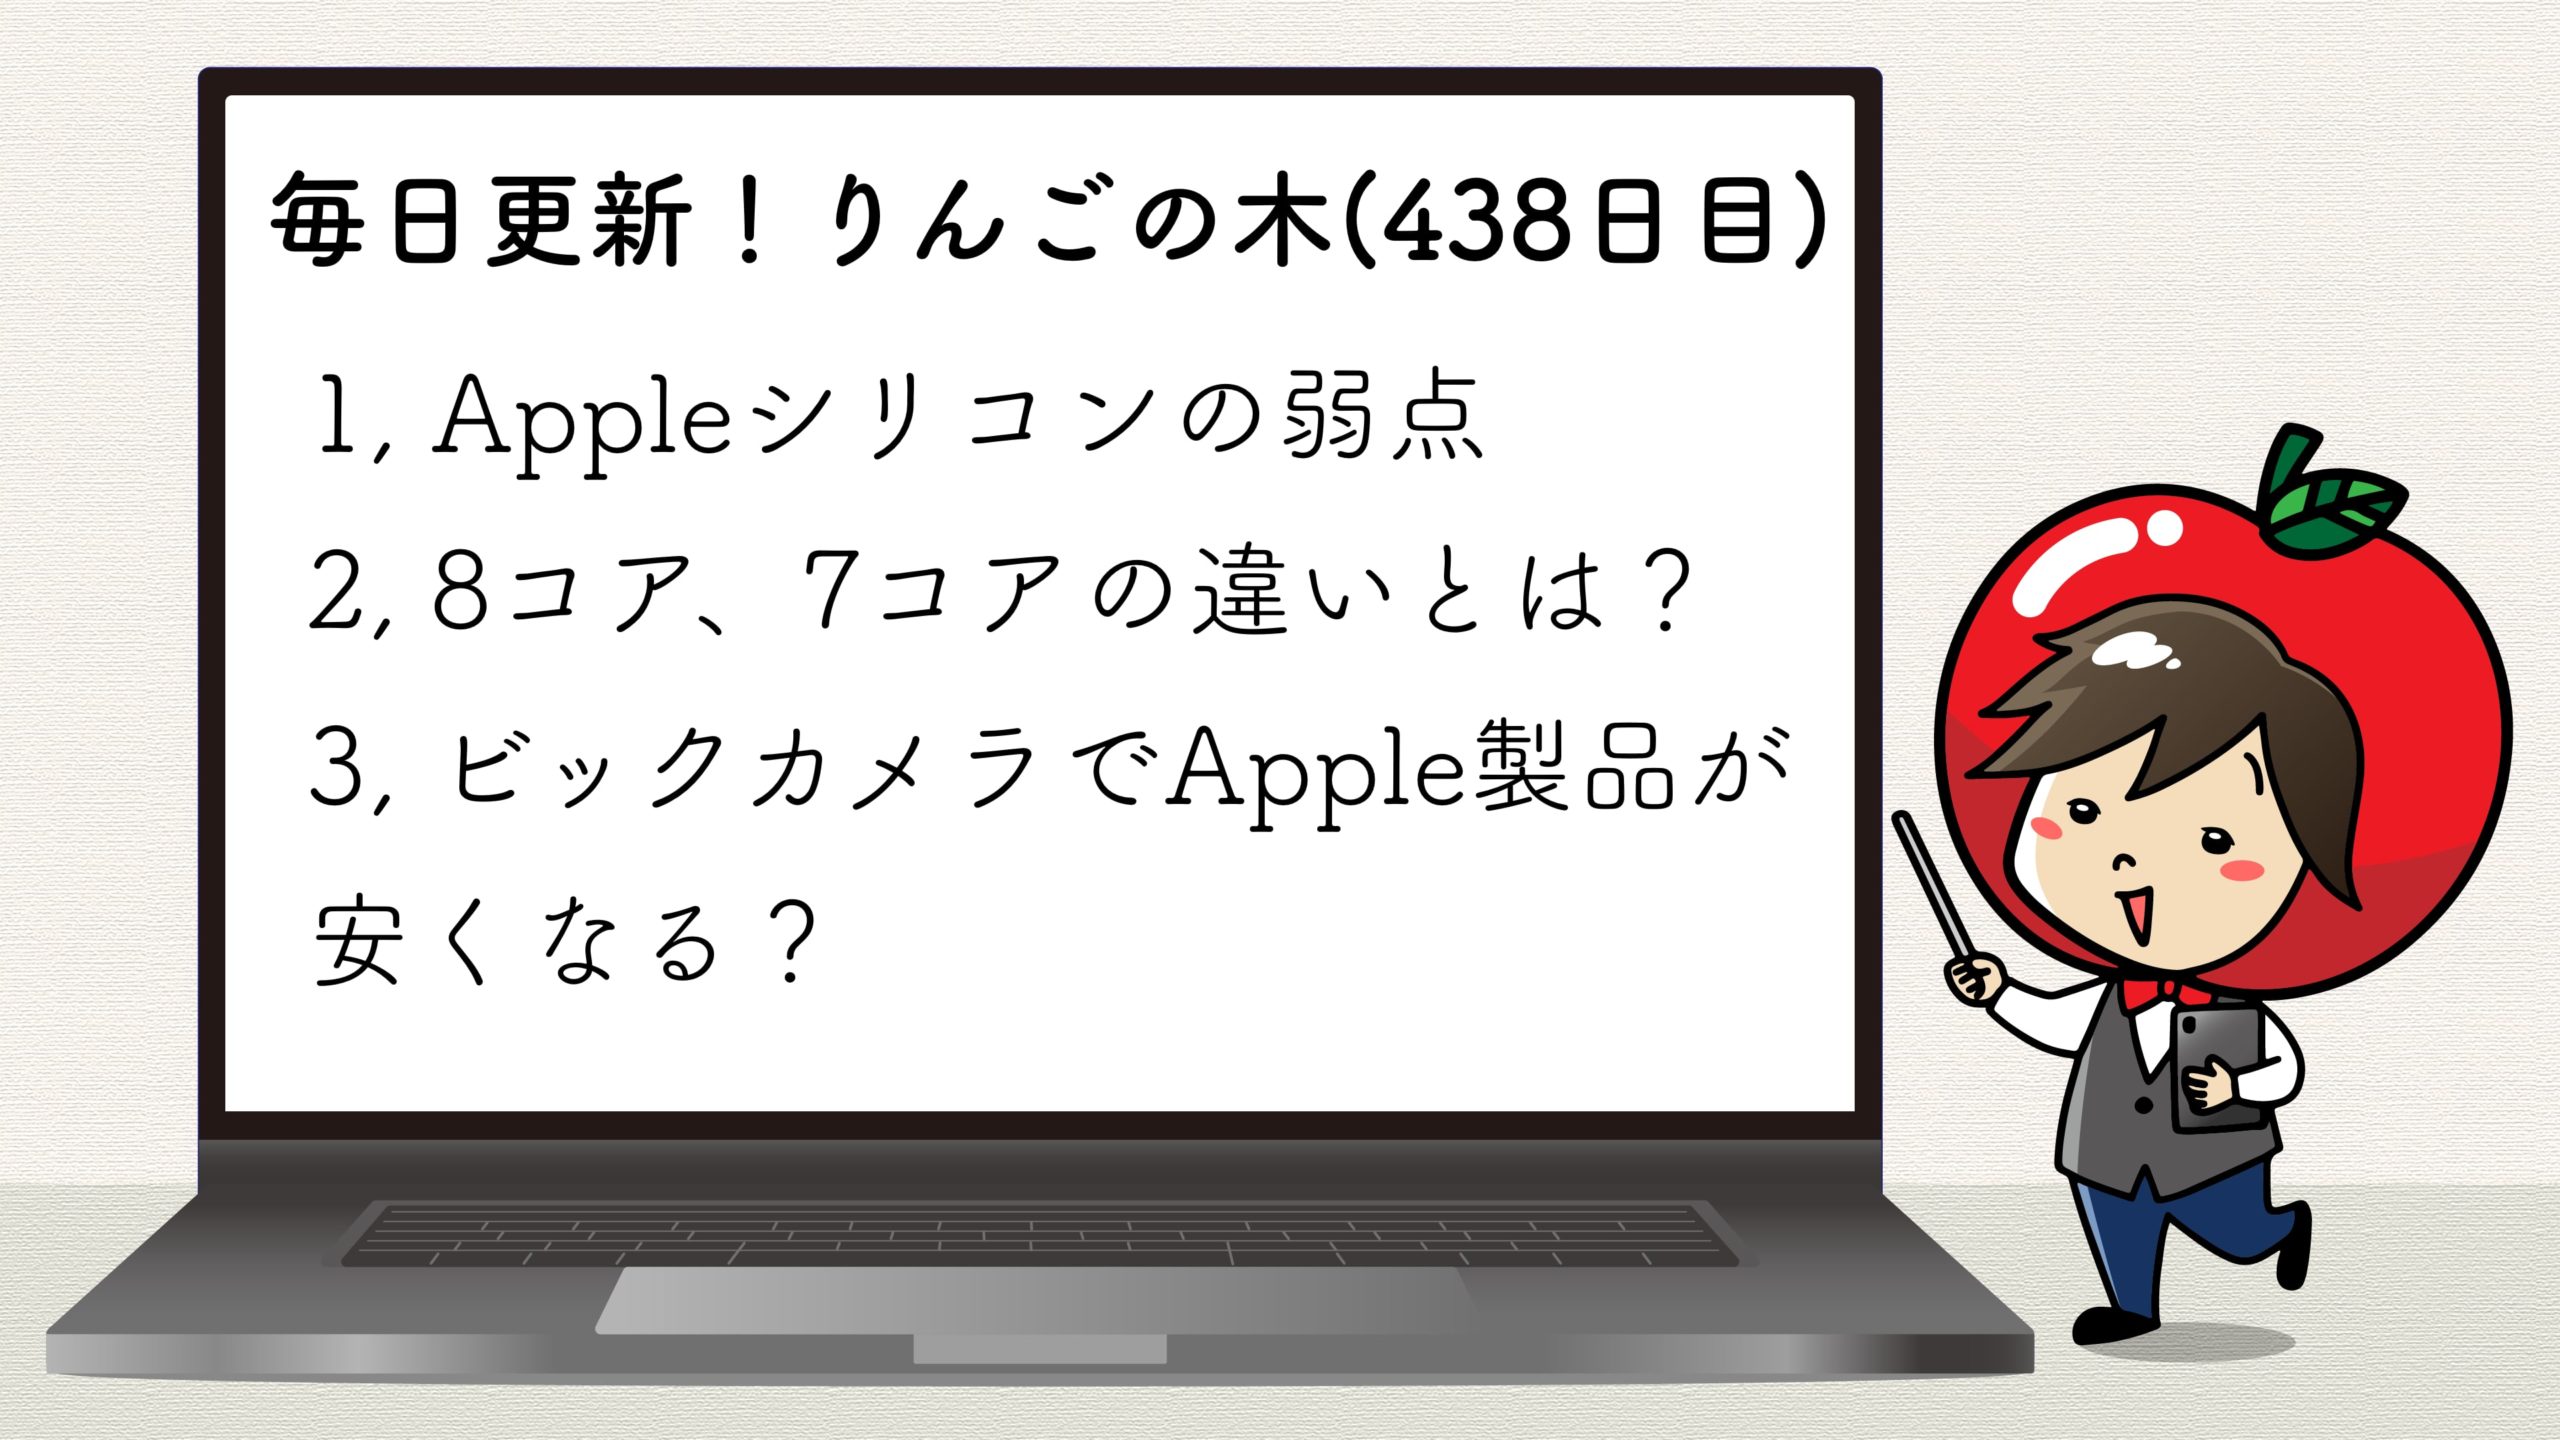 Appleシリコン唯一の弱点とは？７コアGPUと８コアGPUの違って何？【毎日更新！りんごの木(438日目)】